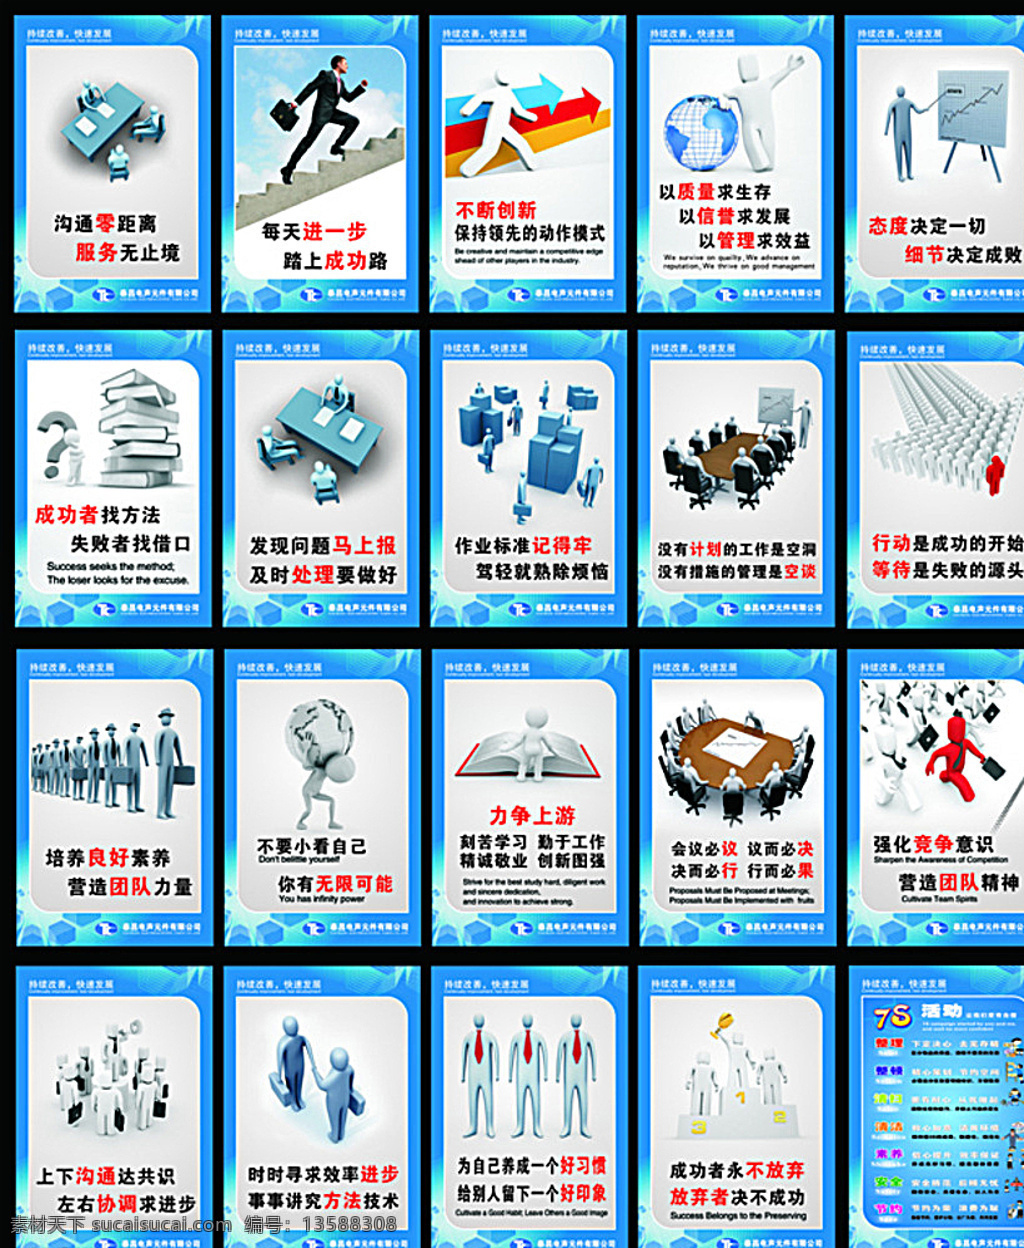 企业文化 企业精神 蓝色底板 3d小人 6s活动 创新 展板模板 白色